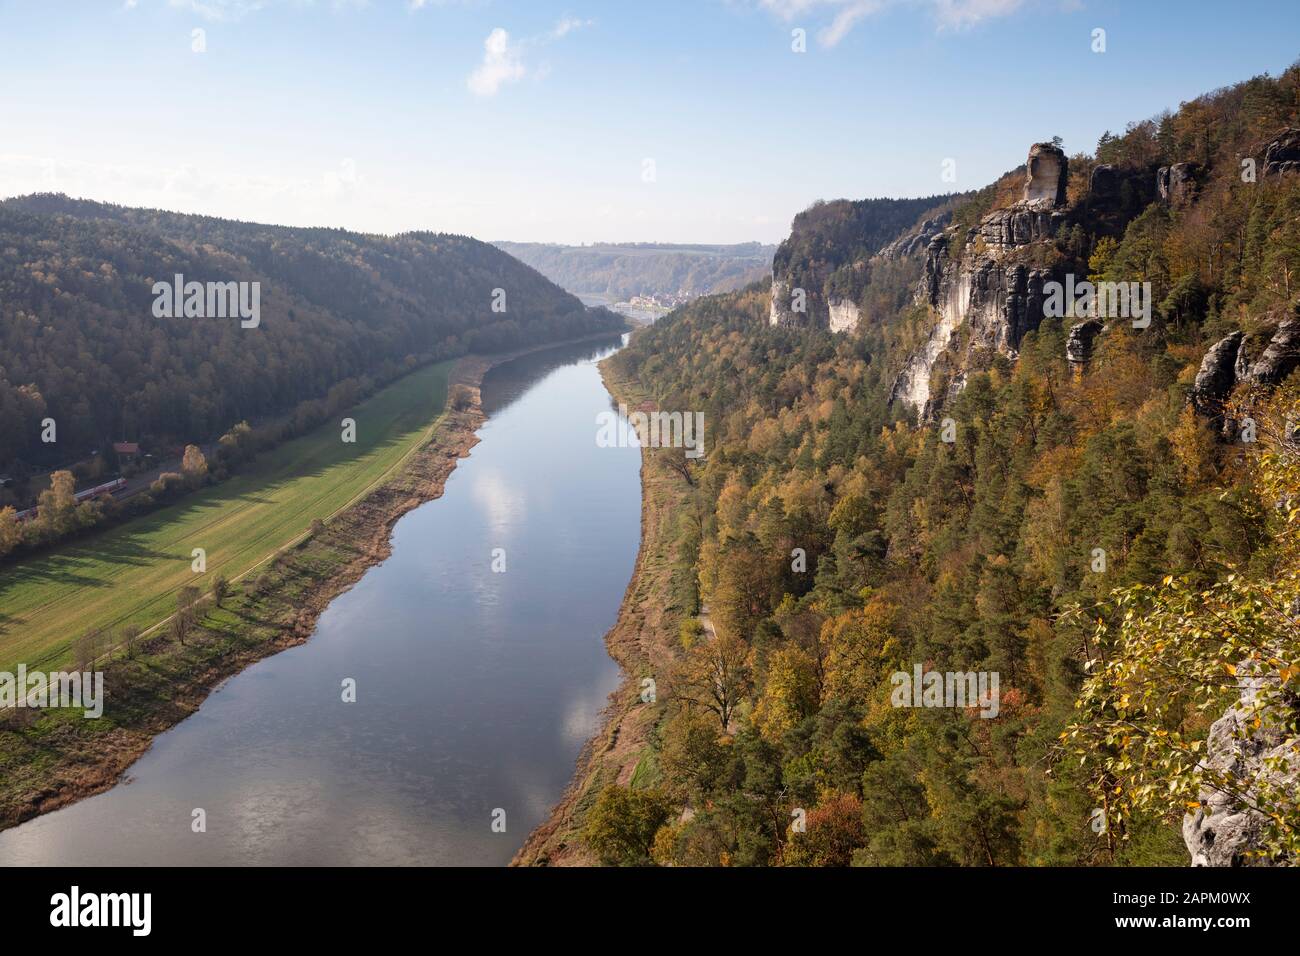 Deutschland, Sachsen, Rathen, landschaftlich schöne Herbstansicht des Elbtals von der Bastei-Felsformation aus gesehen Stockfoto